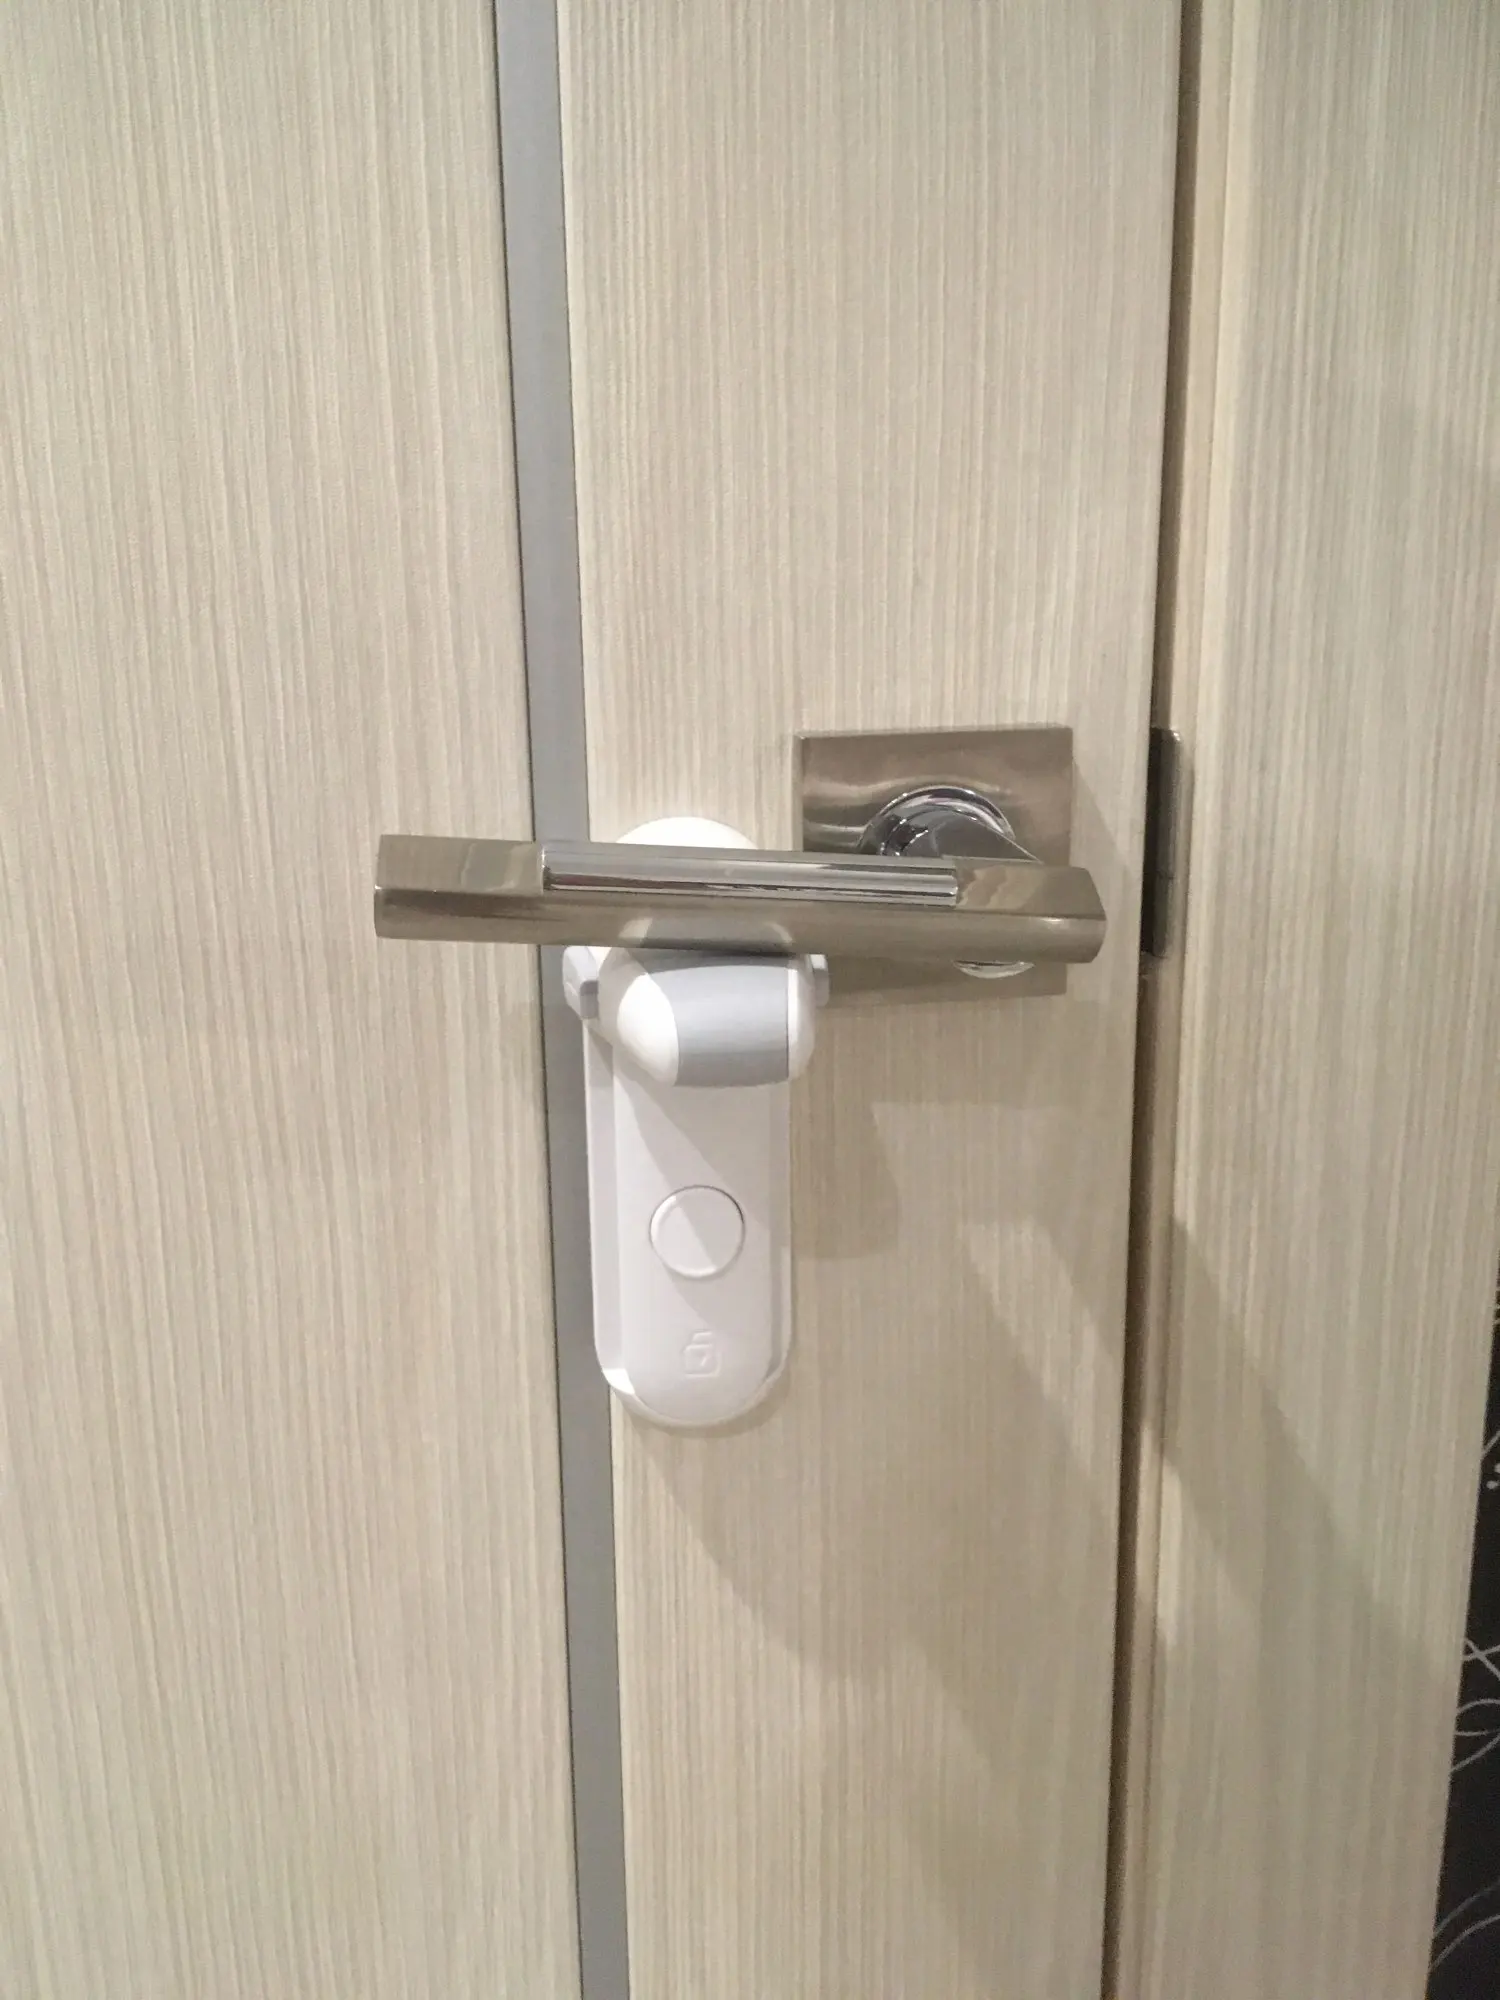 EUDEMON Door Lever Lock, Baby Proofing Door Handle Lock,Childproofing Door Knob Lock Easy to Install and Use 3M VHB Adhesive photo review